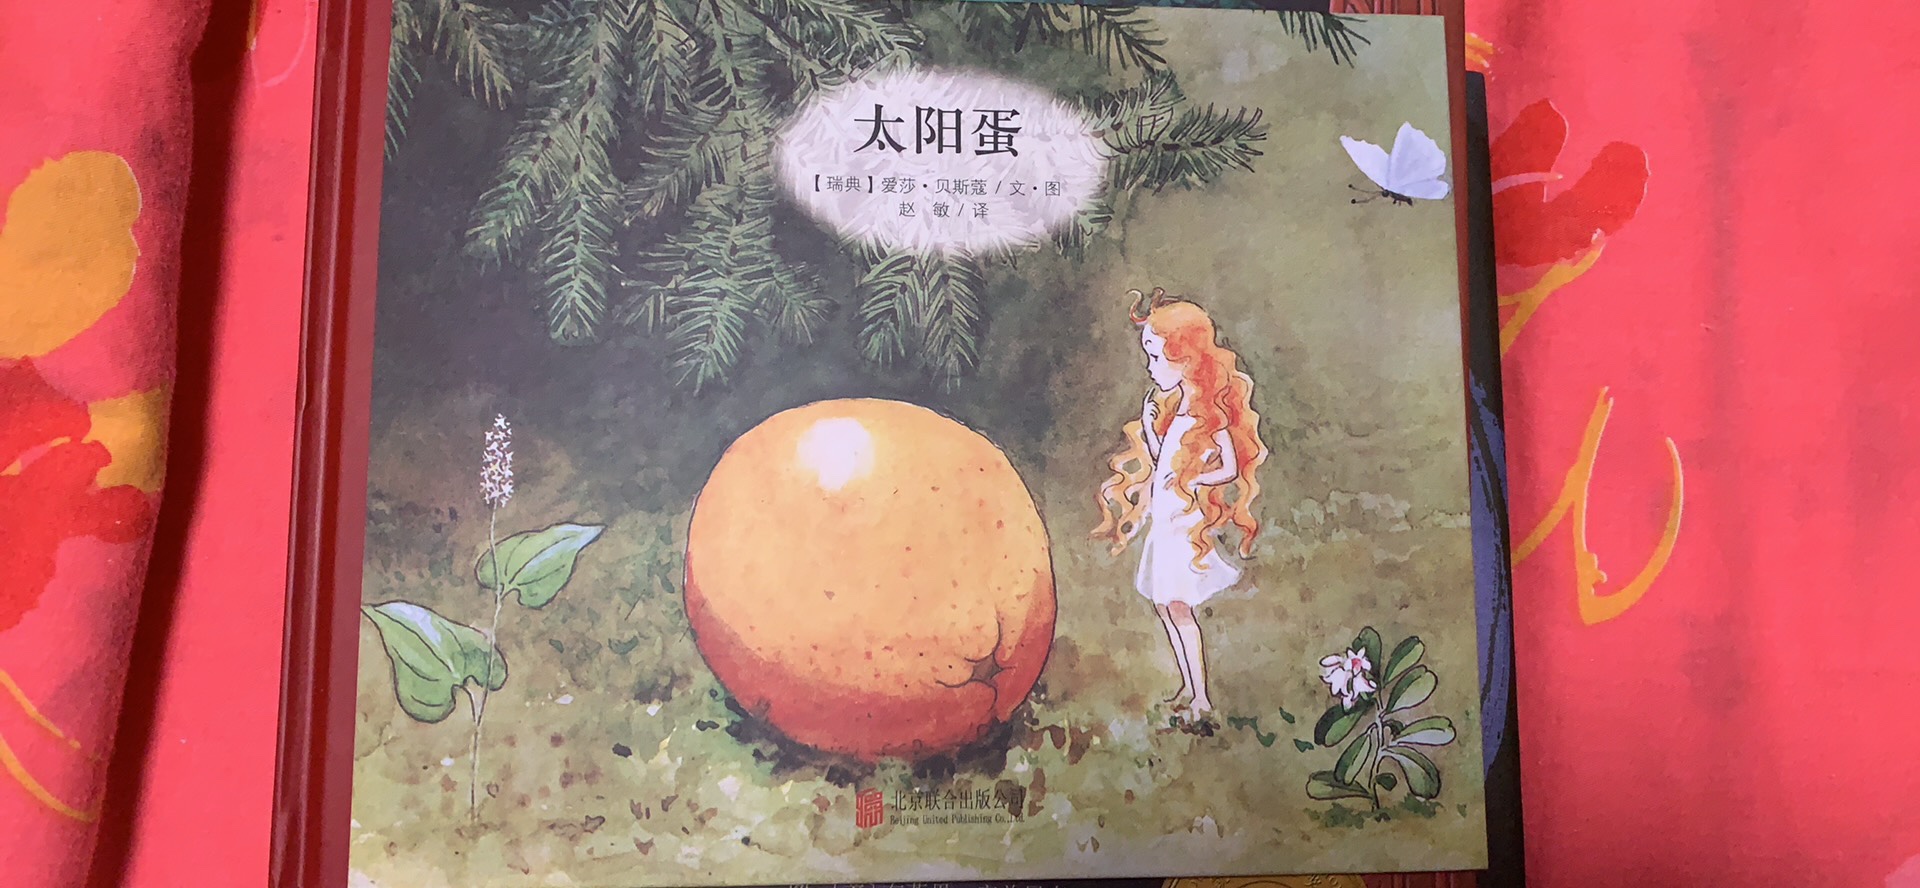 以森林里的小精灵遇到了一个橙子展开的故事，小朋友喜欢看，乘这次活动，屯了好多书，希望宝宝养成阅读的好习惯！